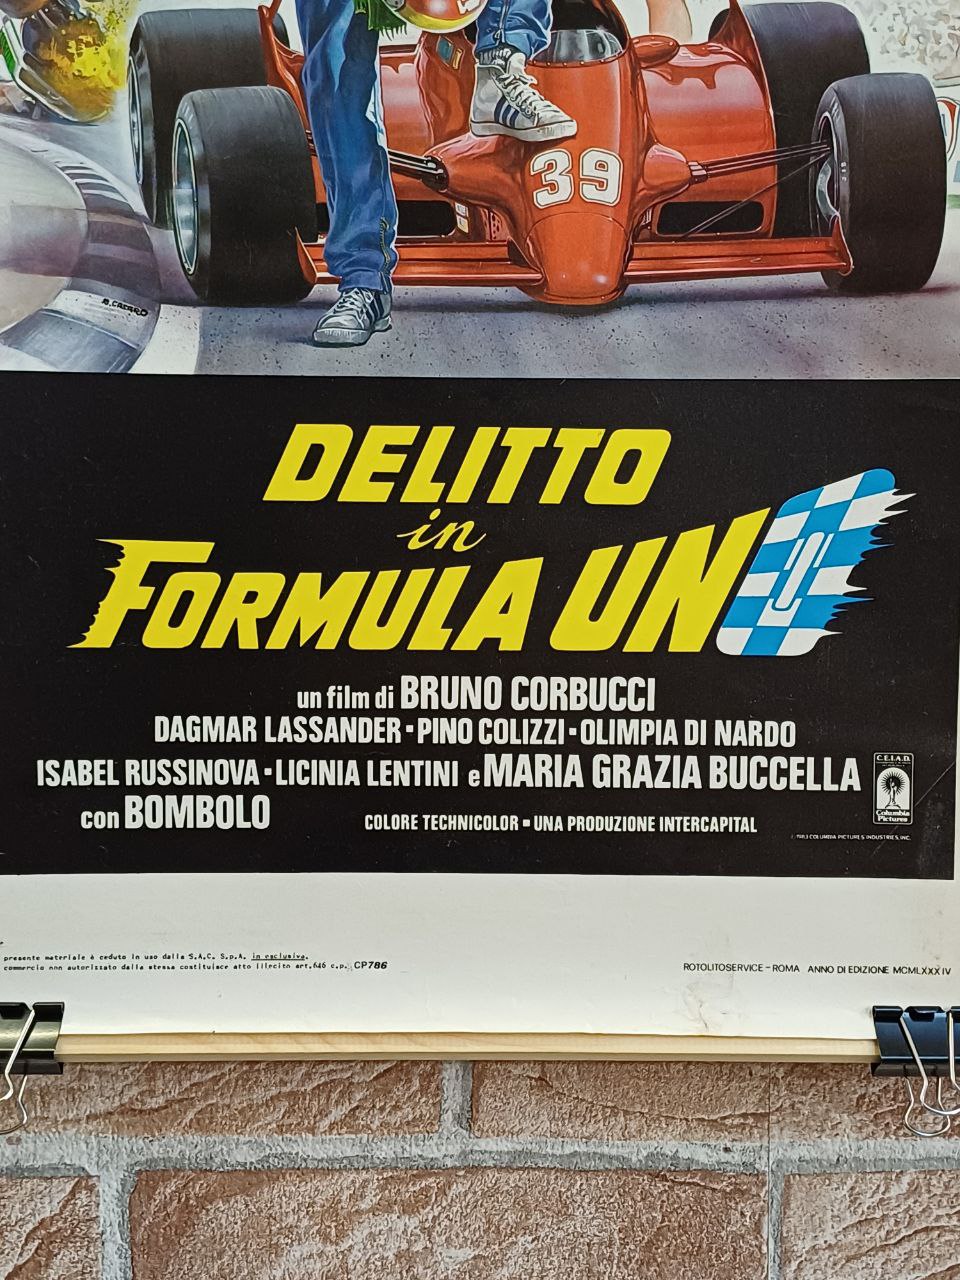 Locandina originale di cinema - "Delitto in Formula Uno"